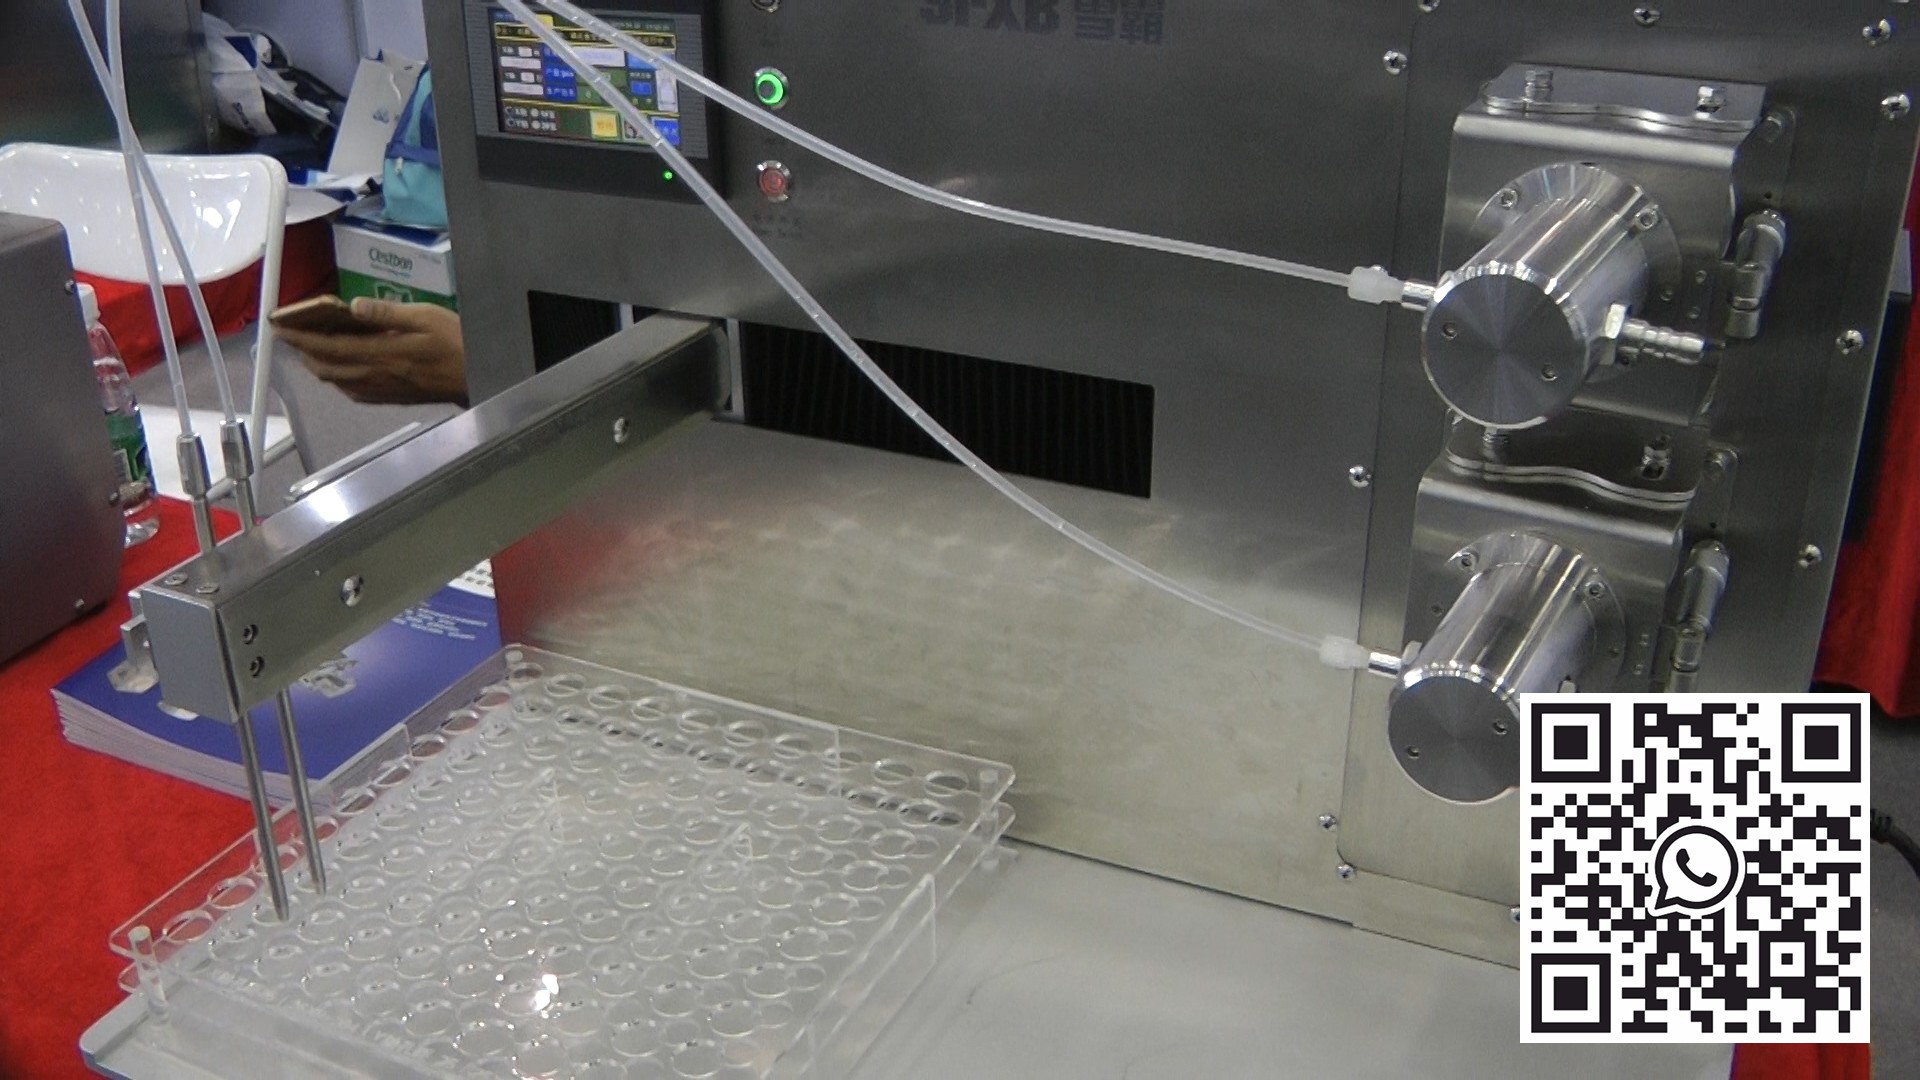 Robot pour remplir les bouteilles de pénicilline avec du liquide dans une cassette